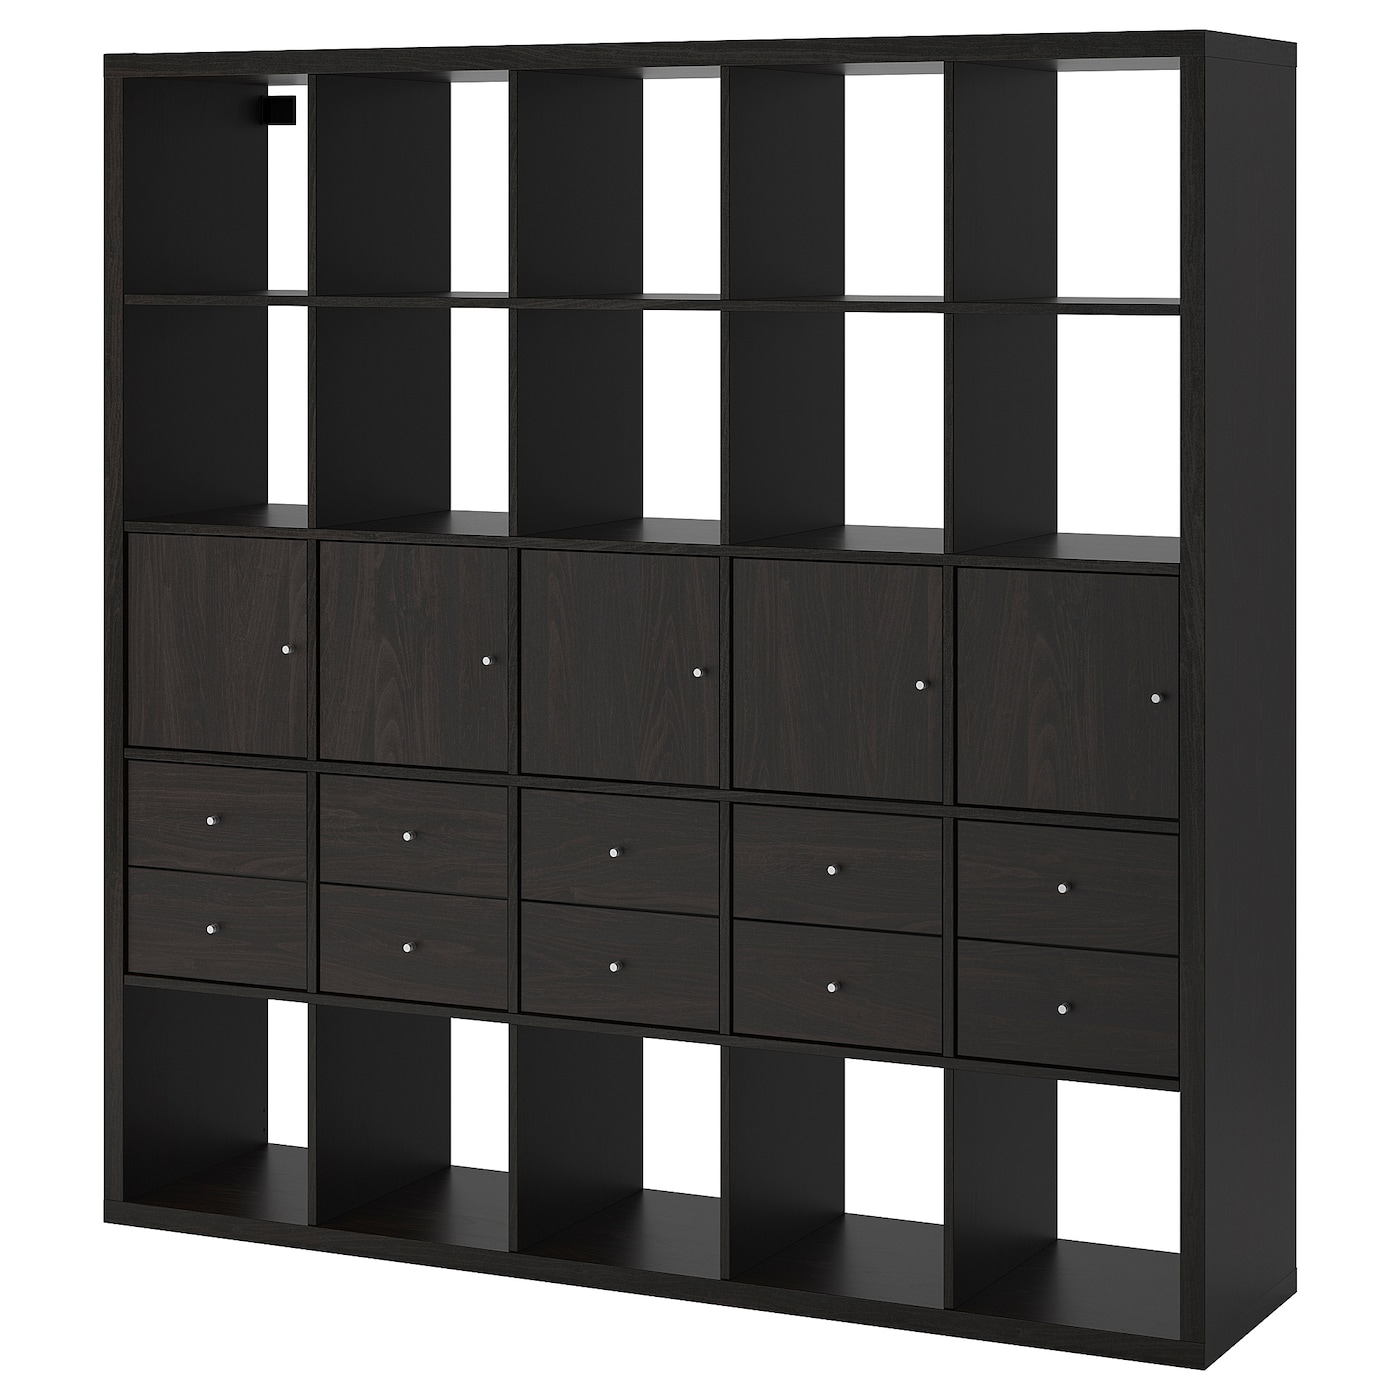 Стеллаж 25 ячеек с ящиками и дверцами - IKEA KALLAX, 182х182 см, черный, КАЛЛАКС ИКЕА